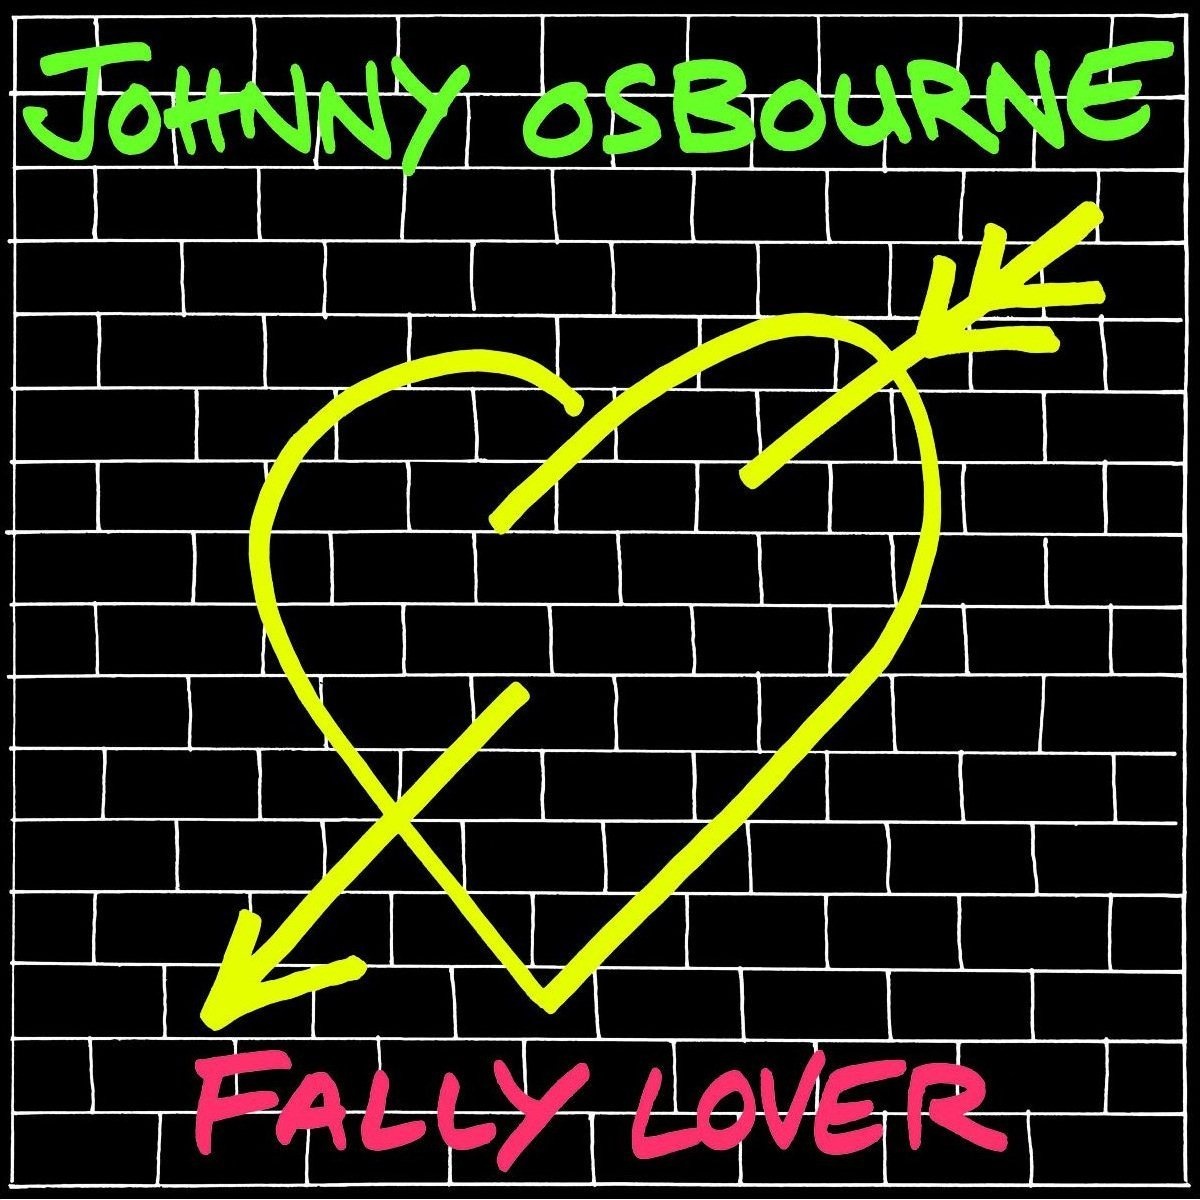 Fally Lover (Vinyl) - Johnny Osbourne. (LP)